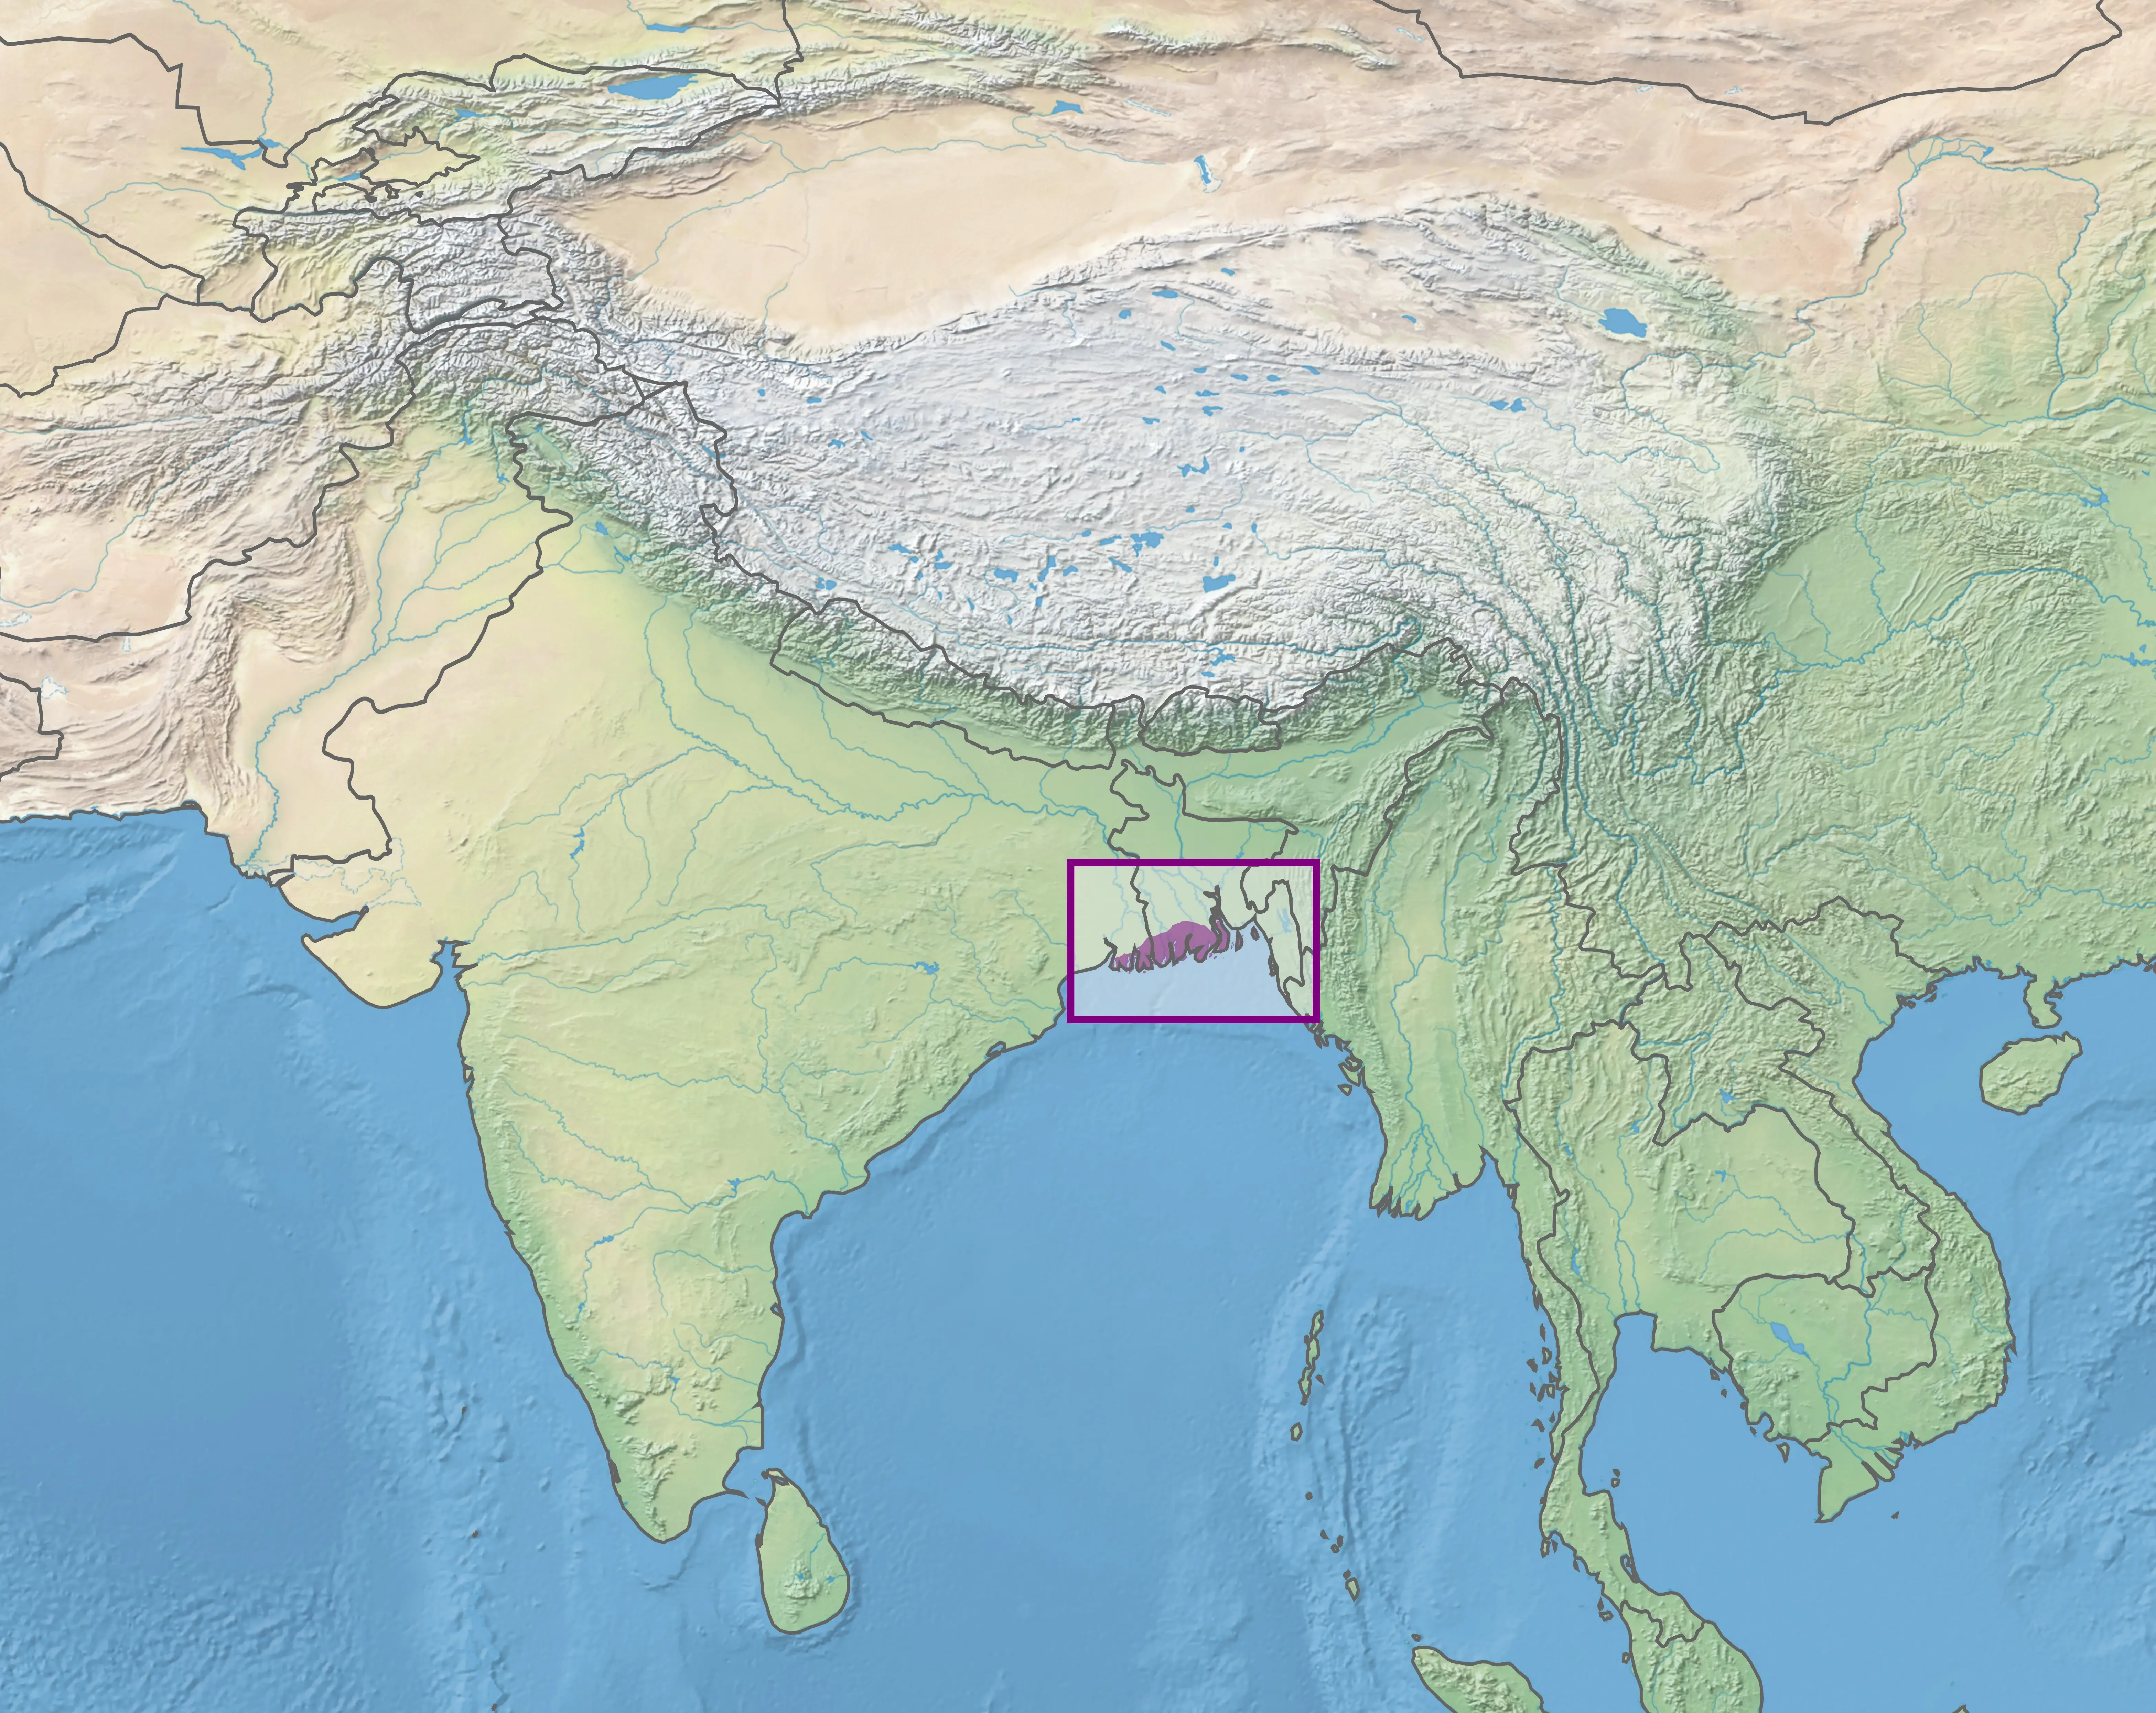 Sundarbans Delta Information